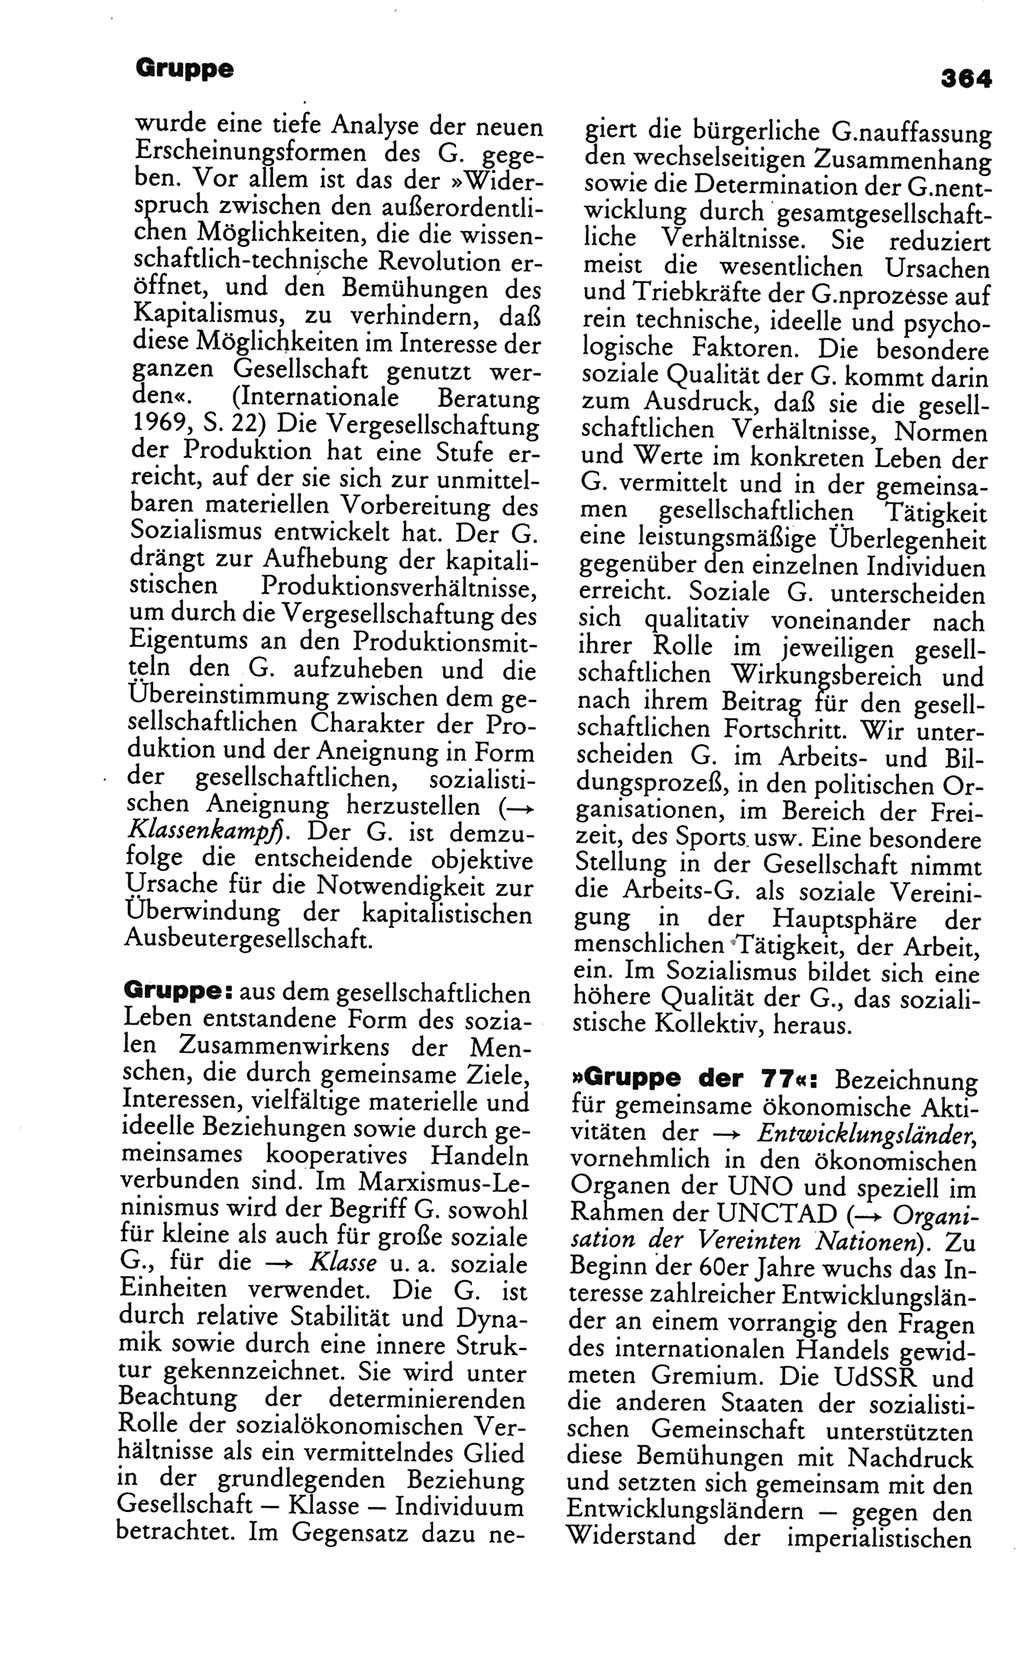 Kleines politisches Wörterbuch [Deutsche Demokratische Republik (DDR)] 1986, Seite 364 (Kl. pol. Wb. DDR 1986, S. 364)